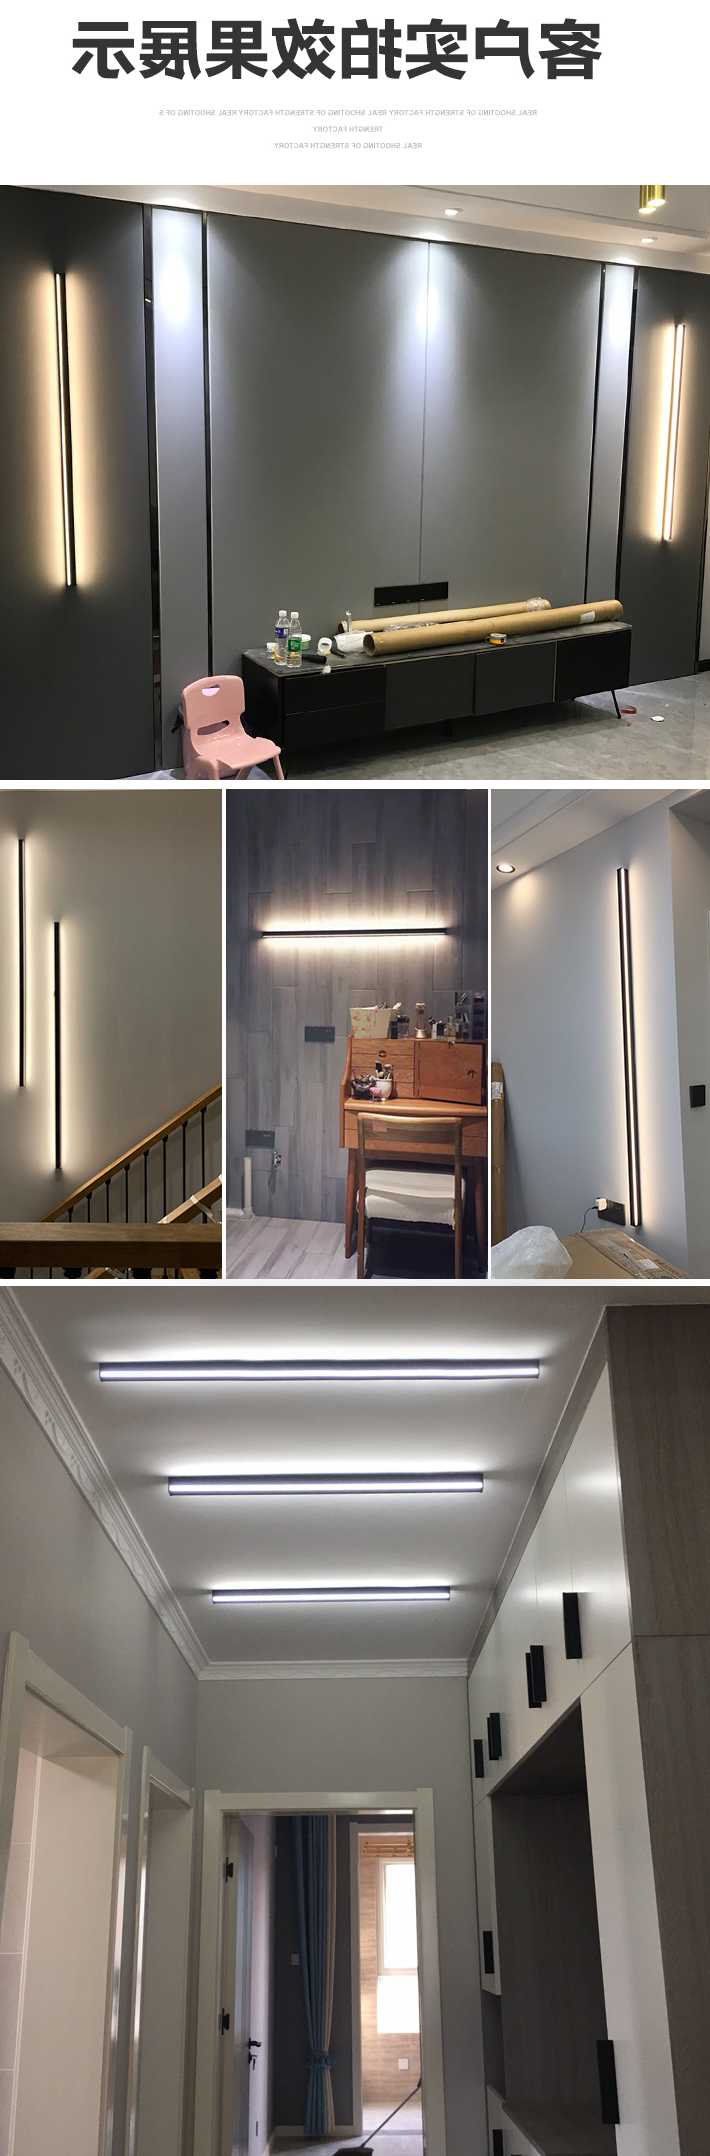 Opinie Lampa ścienna LED minimalistyczna - prosta linia światła.… sklep online